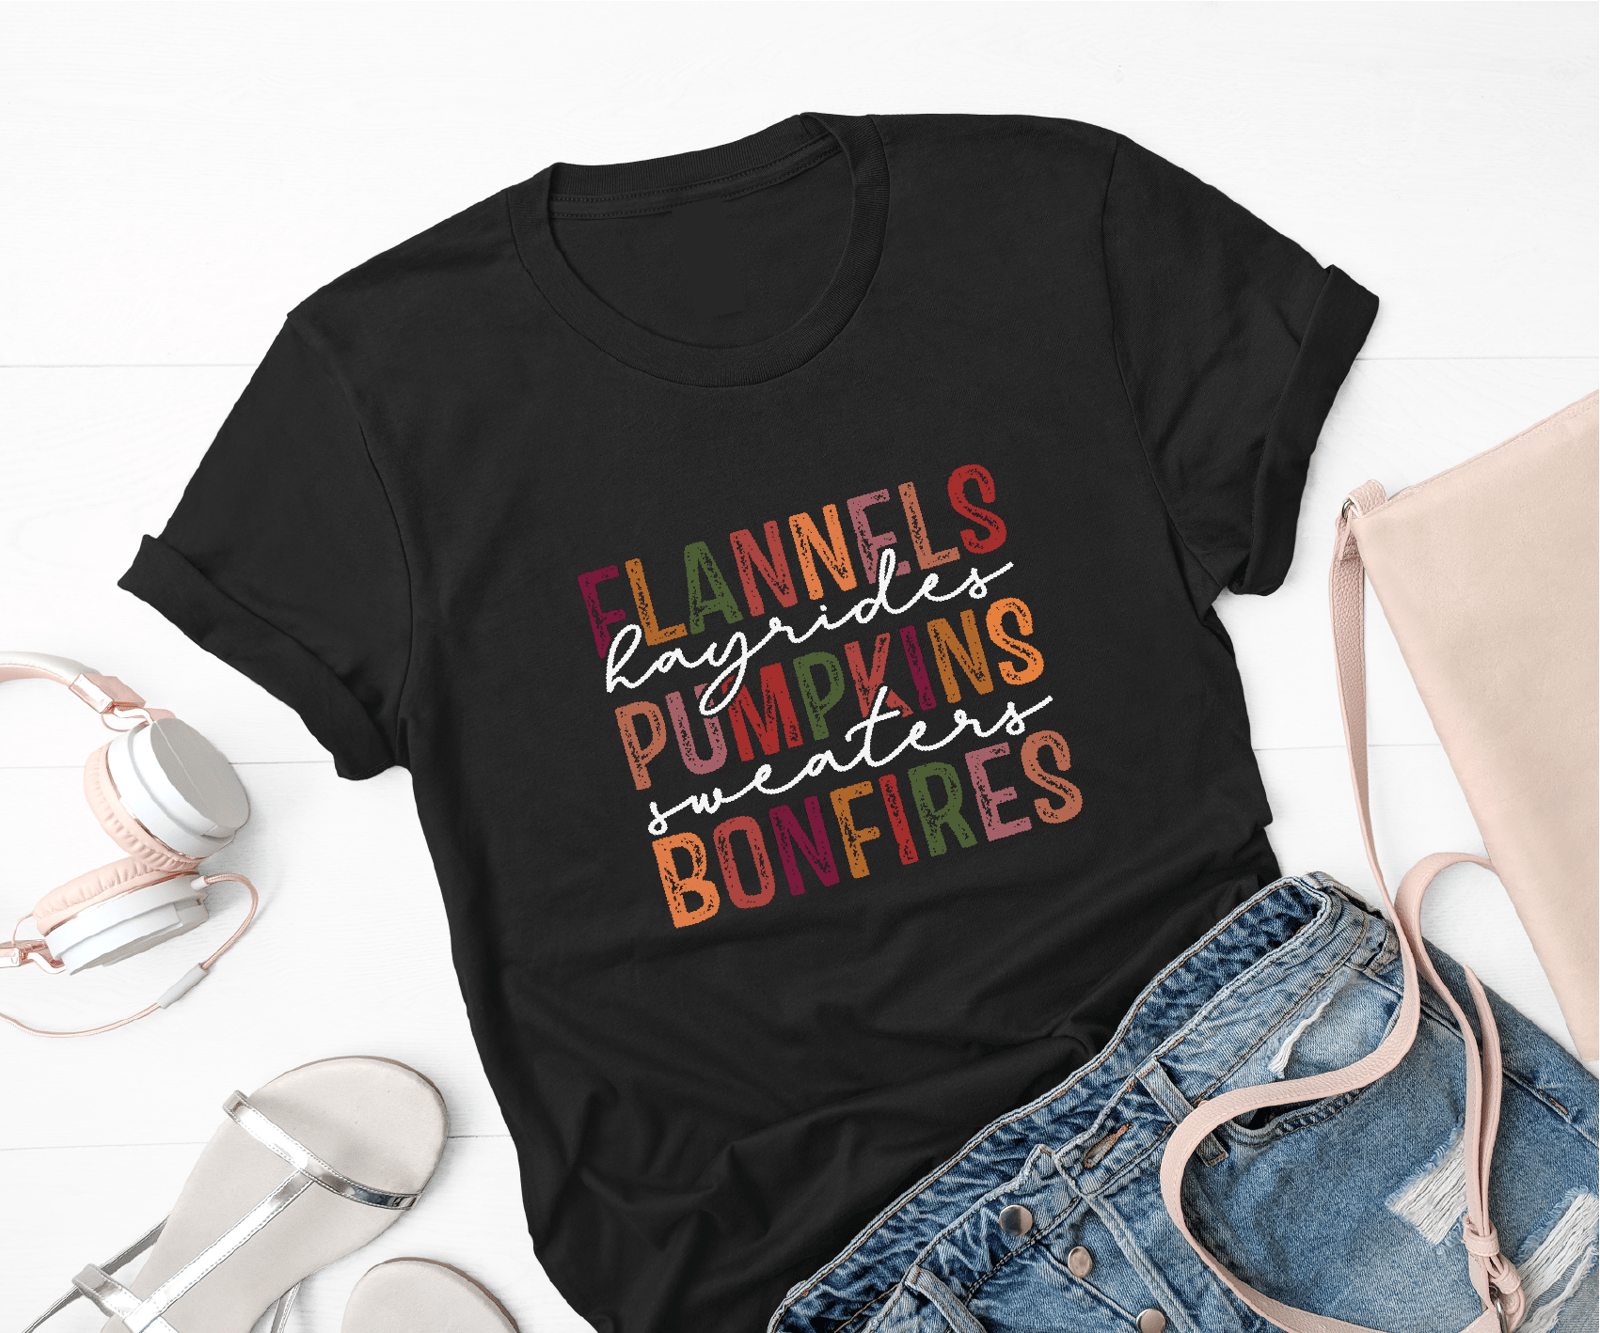 Flannels Pumpkins & Bonfires Velvet Bells Outfit, Ships Fast